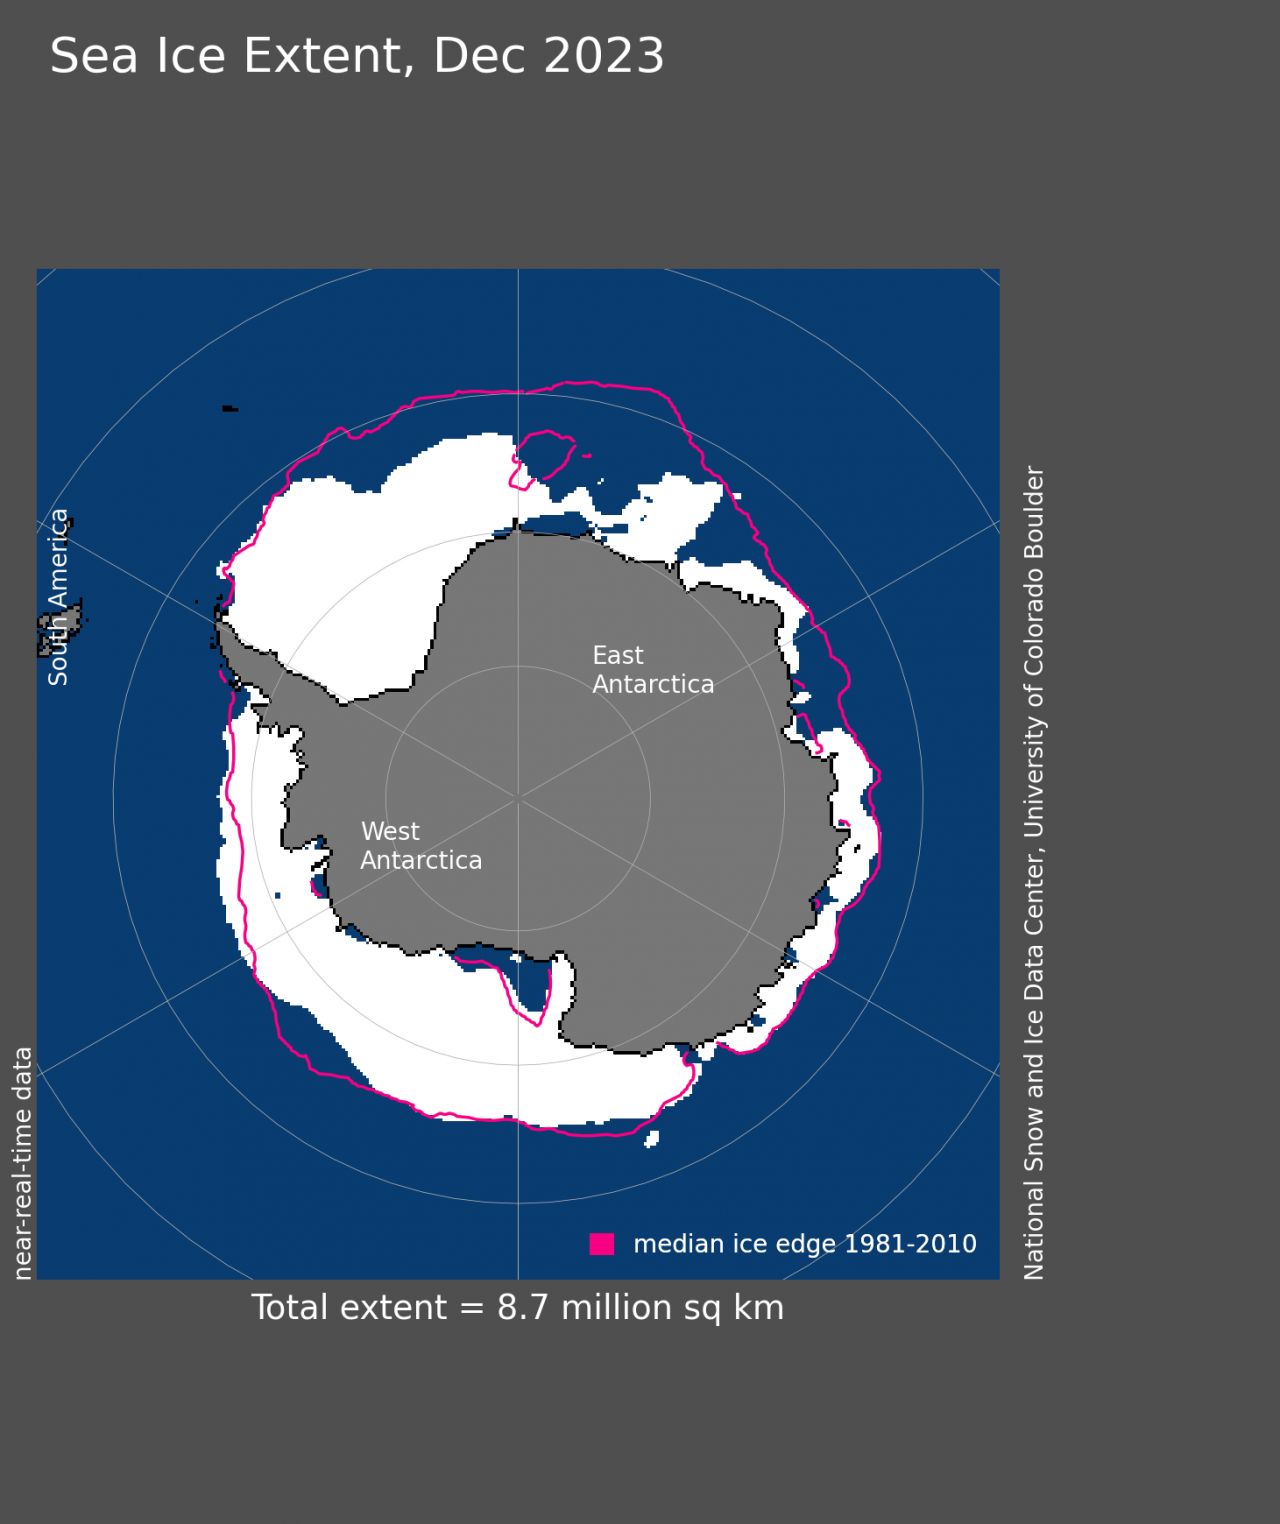 Estensione del pack antartico in relazione alla media, riferita a dicembre 2023. Fonte dati NSIDC